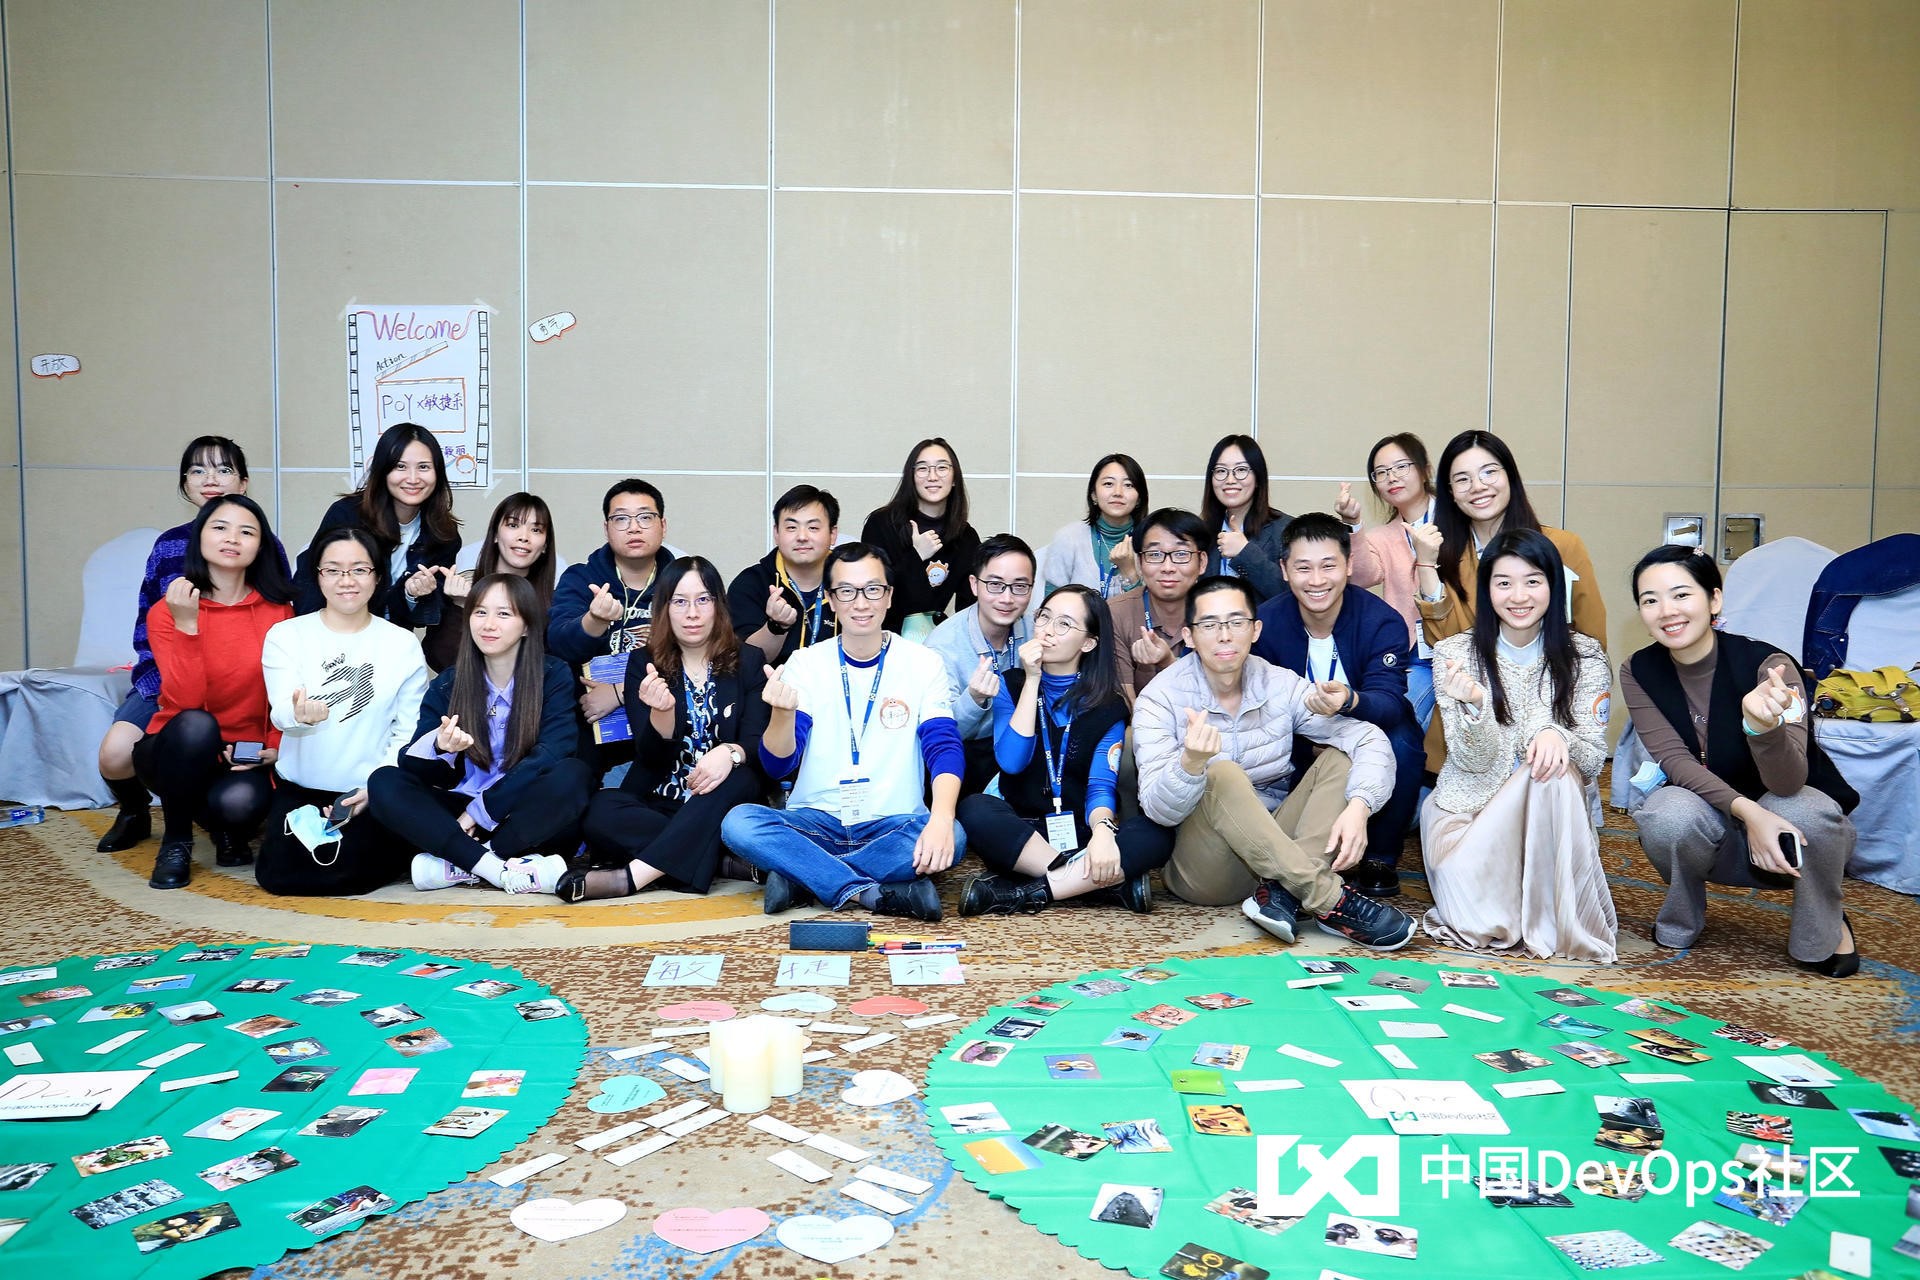 知识与实践相结合，华夏智诚助力 DevOps社区深圳峰会圆满举行